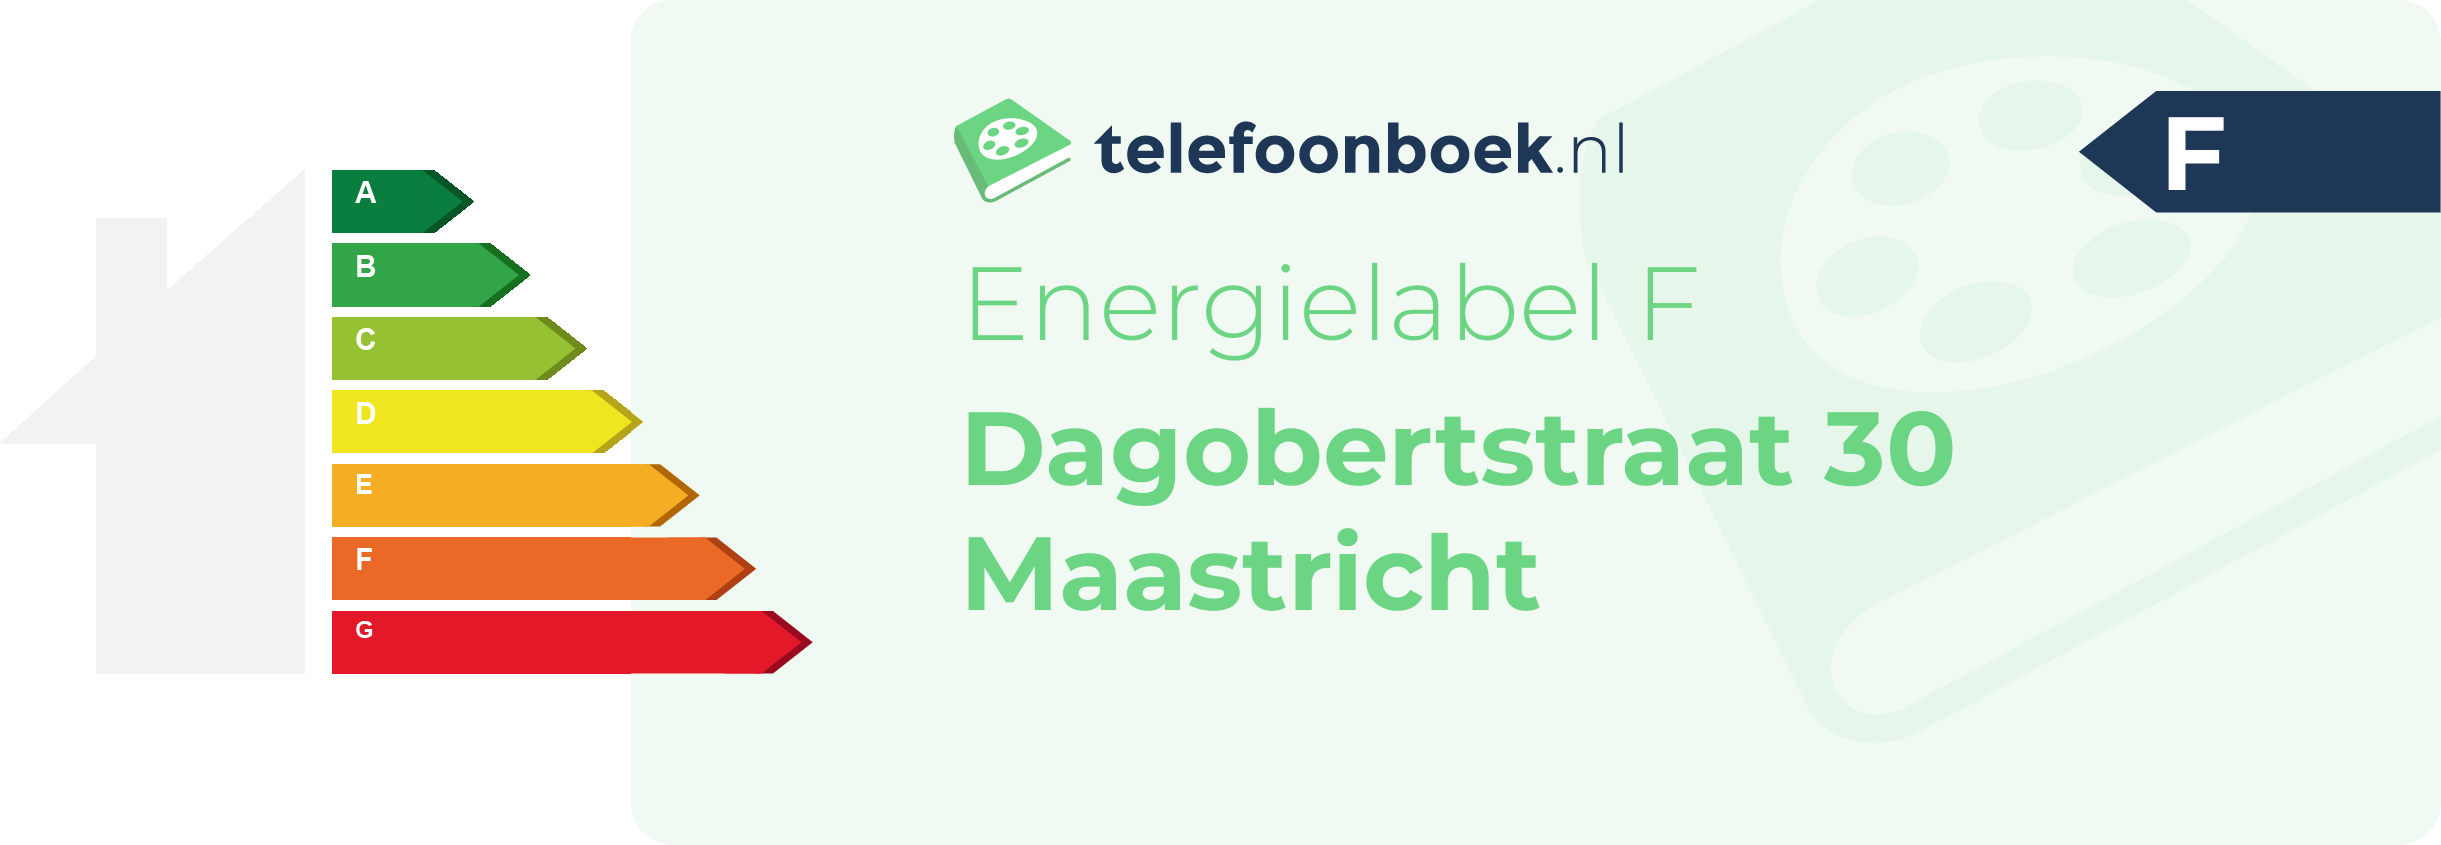 Energielabel Dagobertstraat 30 Maastricht